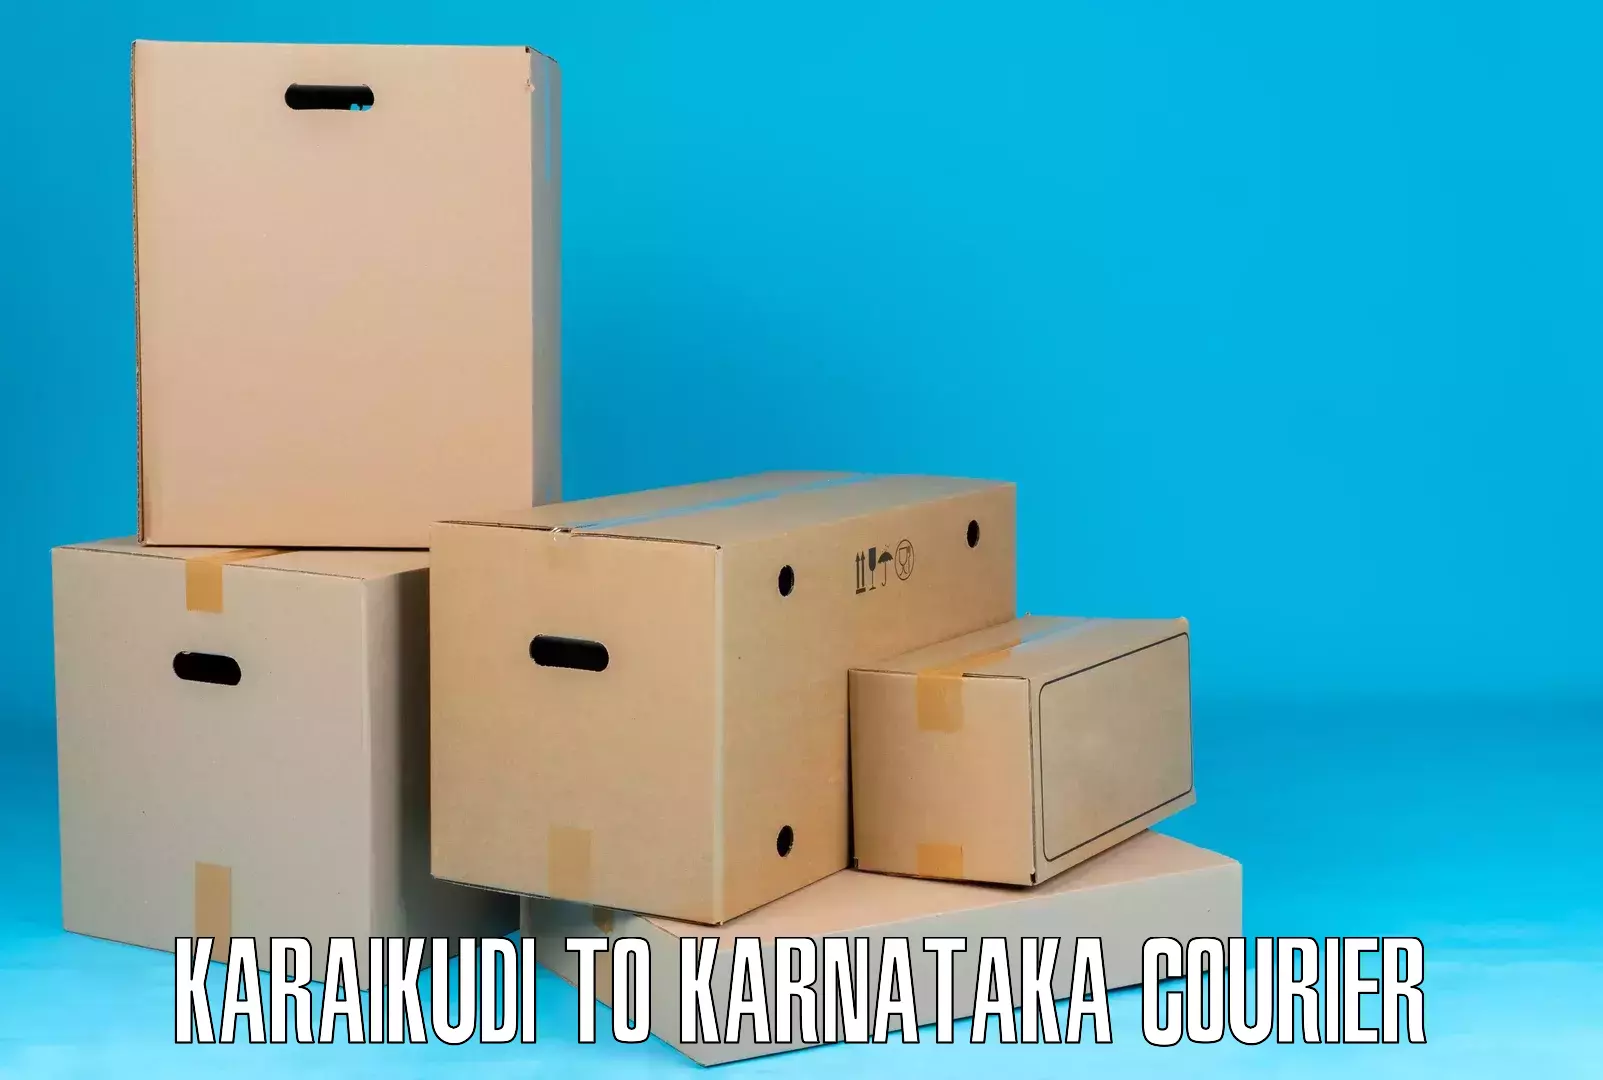 Modern delivery methods in Karaikudi to Karnataka